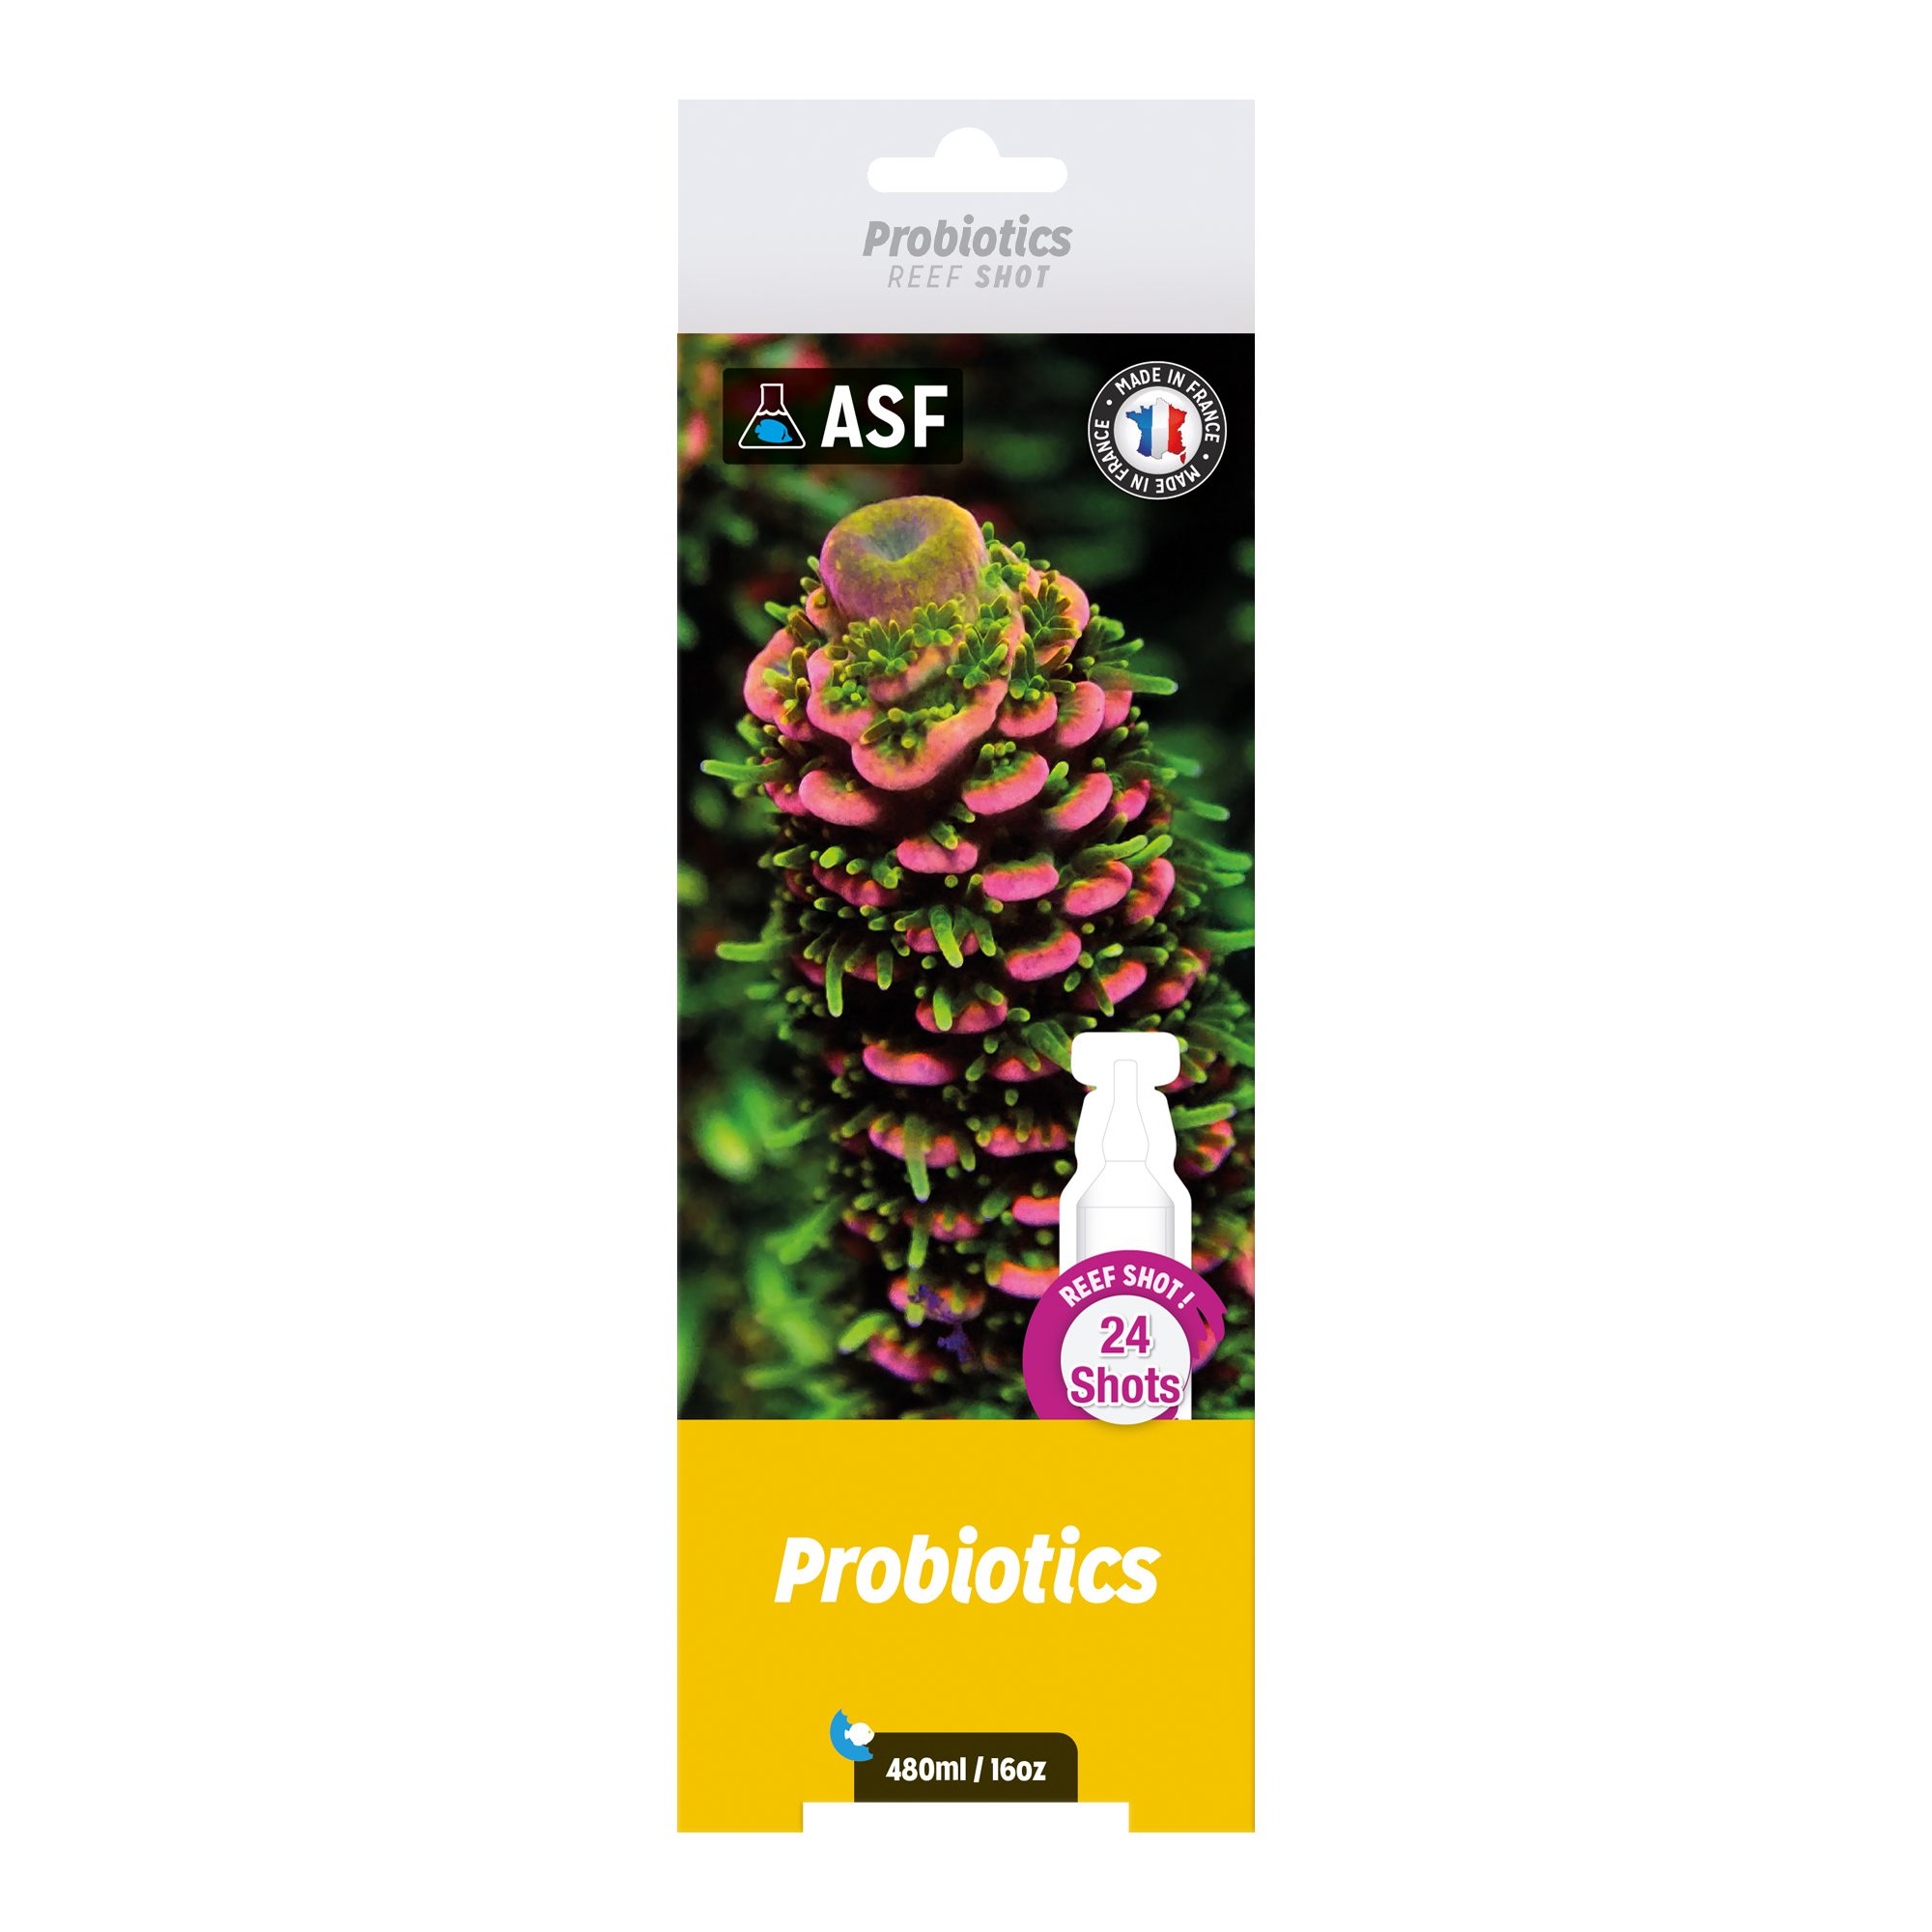 AS Probiotics Reef Shots 24 pack 480ml